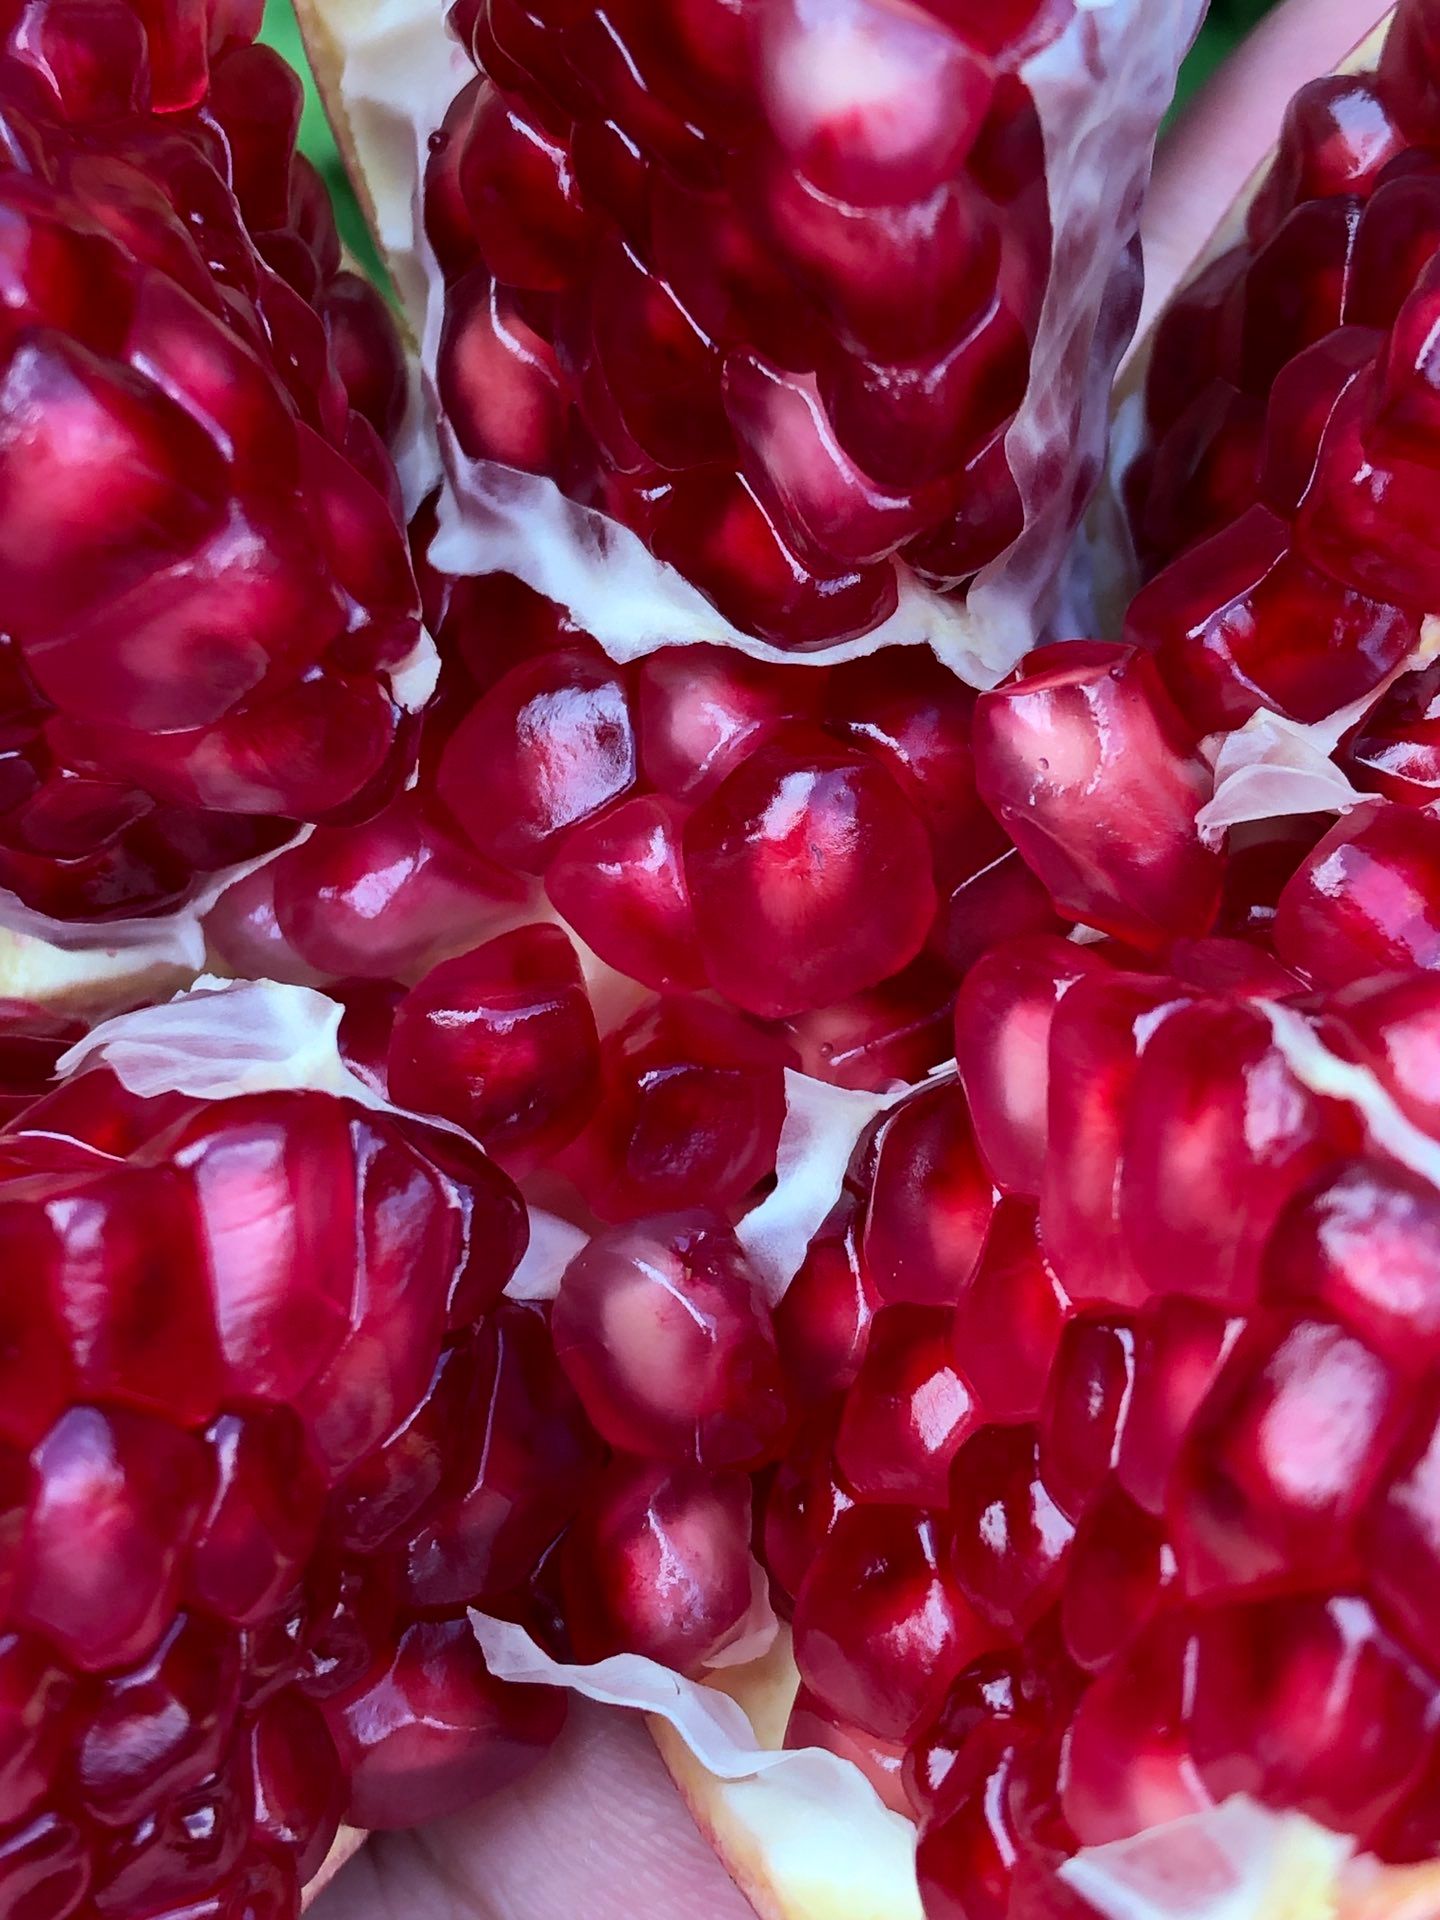 软籽石榴新品种上市,全红皮全软籽,10万斤求高端批发商